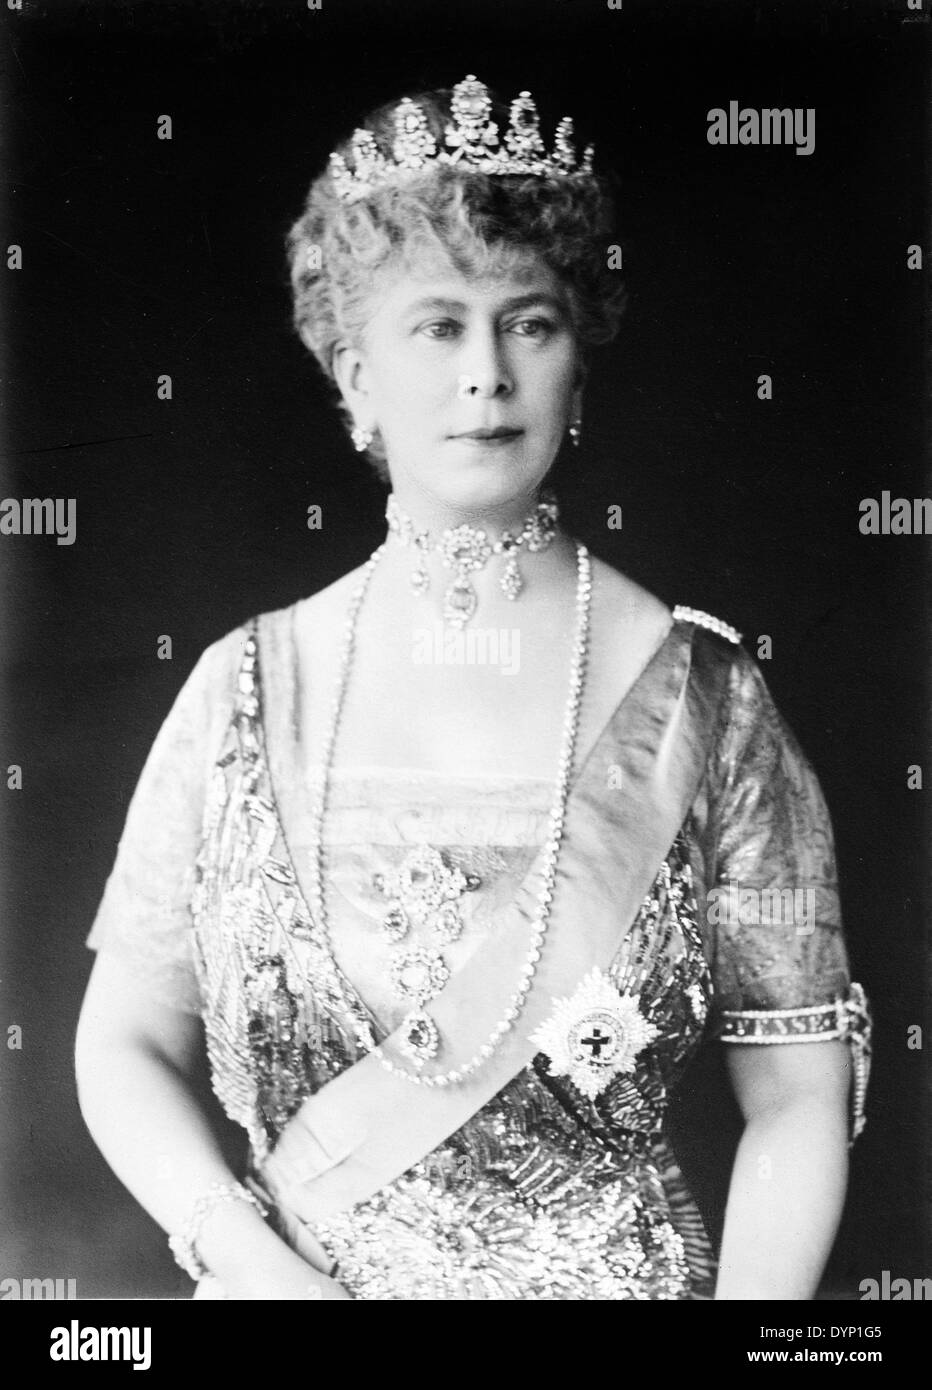 QUEEN Sie MARY von Teck (1867-1953) Frau von König George V ca. 1912 Stockfoto